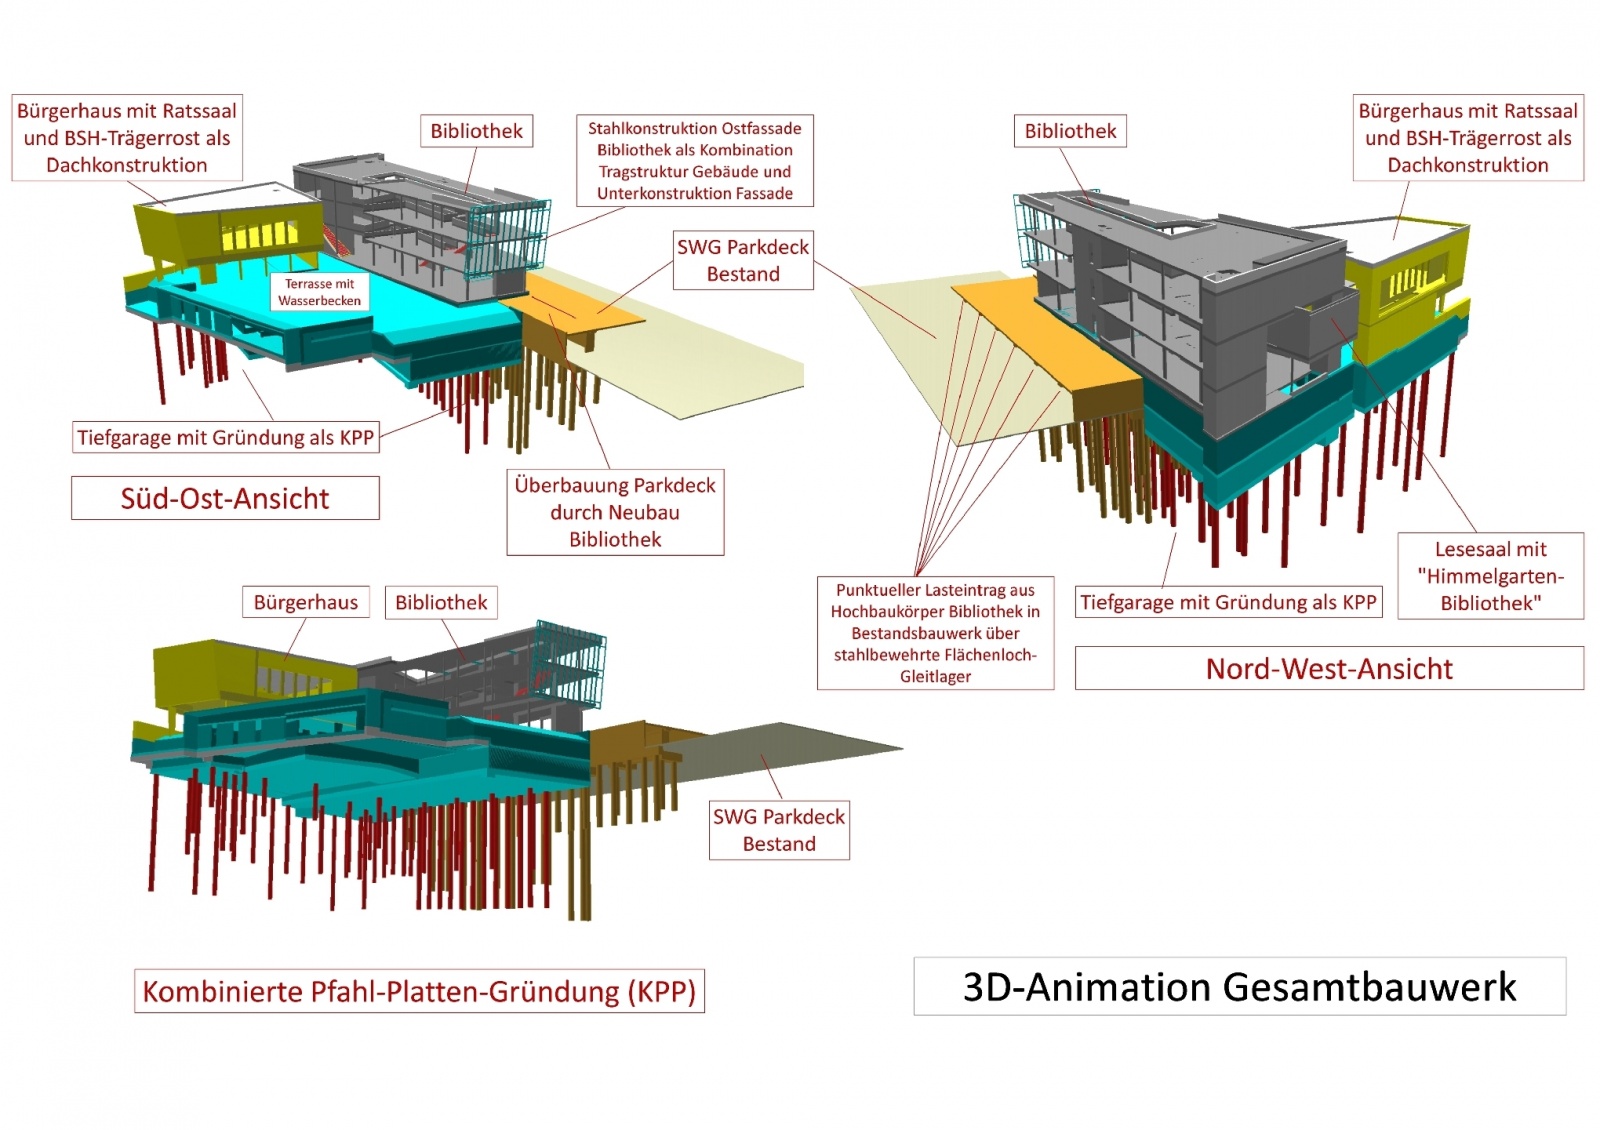 Bürgerhaus mit Stadtbibliothek und Ratssaal, 3D-Animation Gesamtbauwerk, Bild: Ingenieurbüro Dr. Krämer GmbH